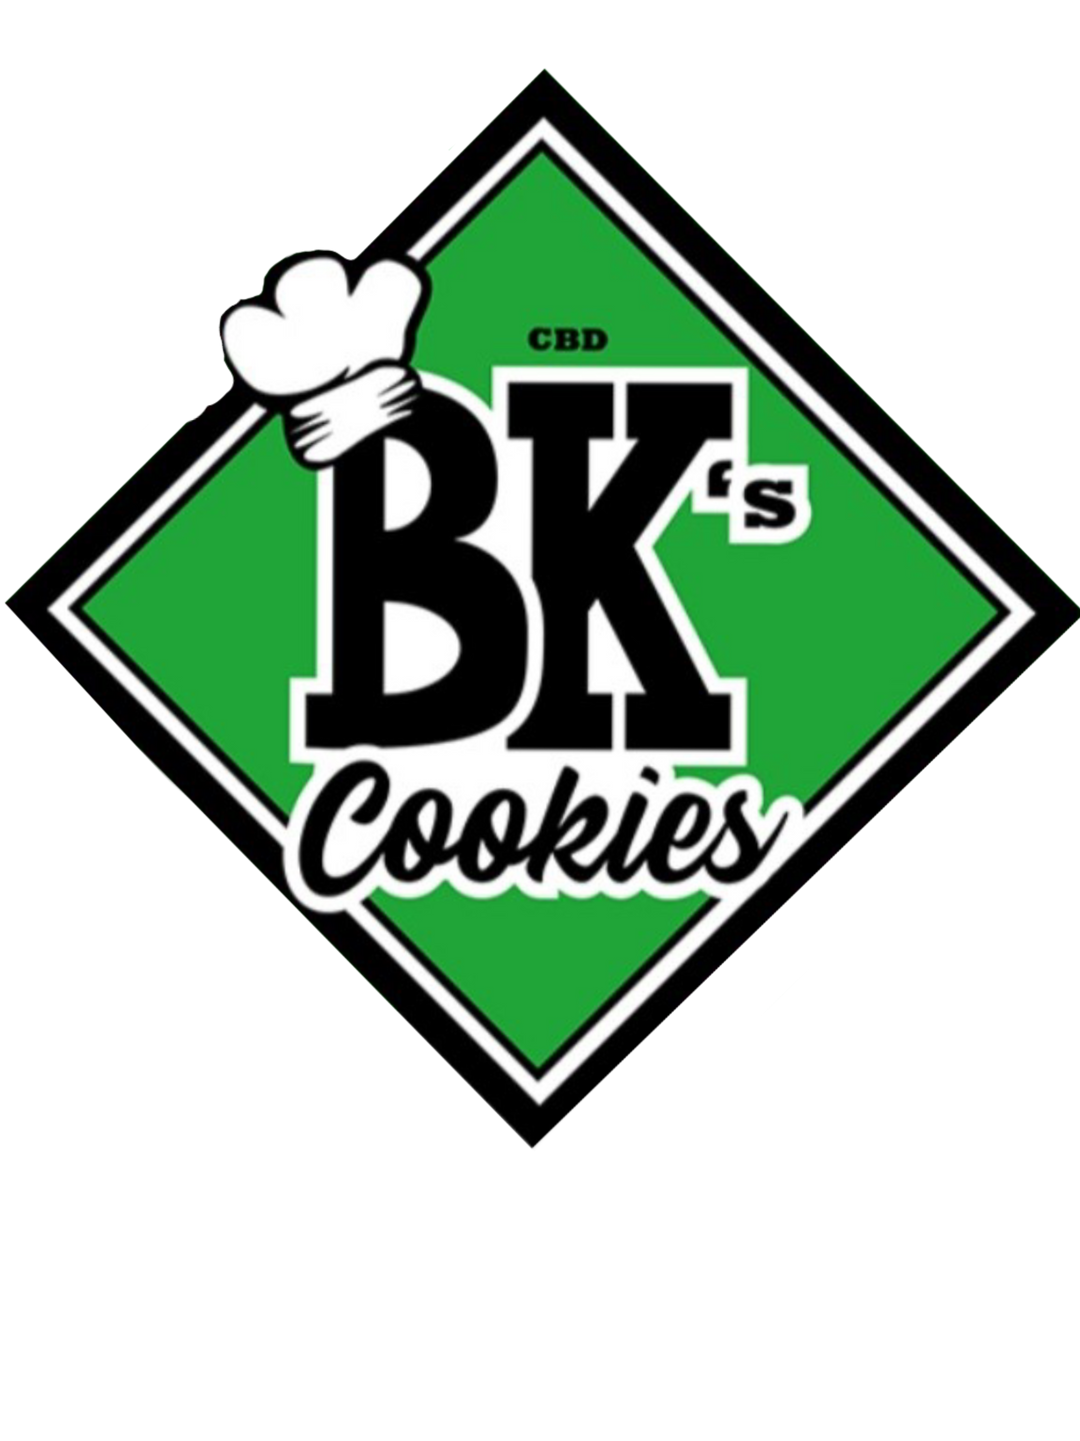 BK’s CBD Cookies